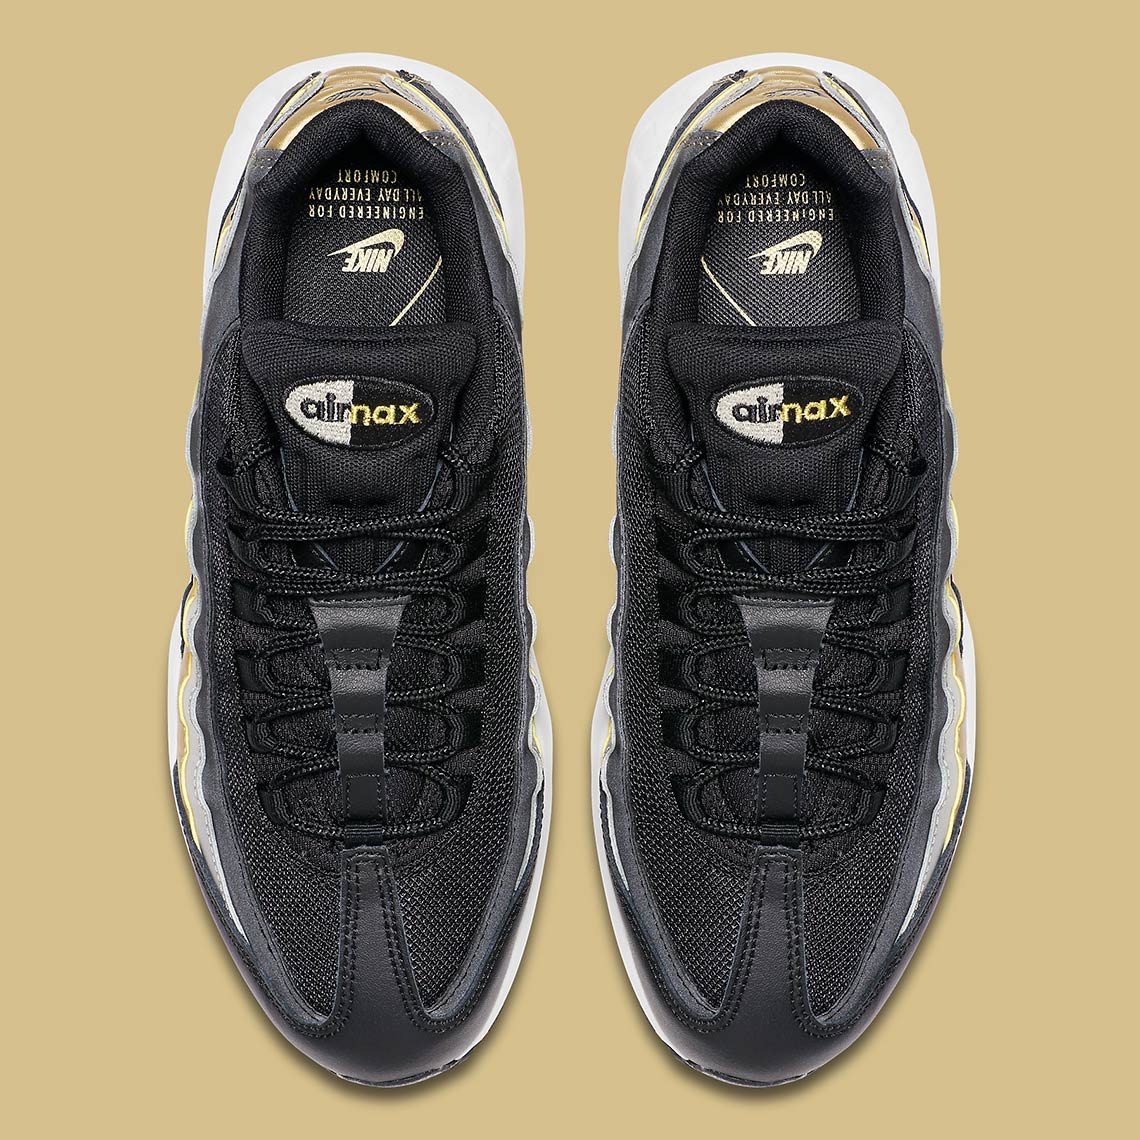 Nike Air Max 95 Gold Silver Bq4554 001 4